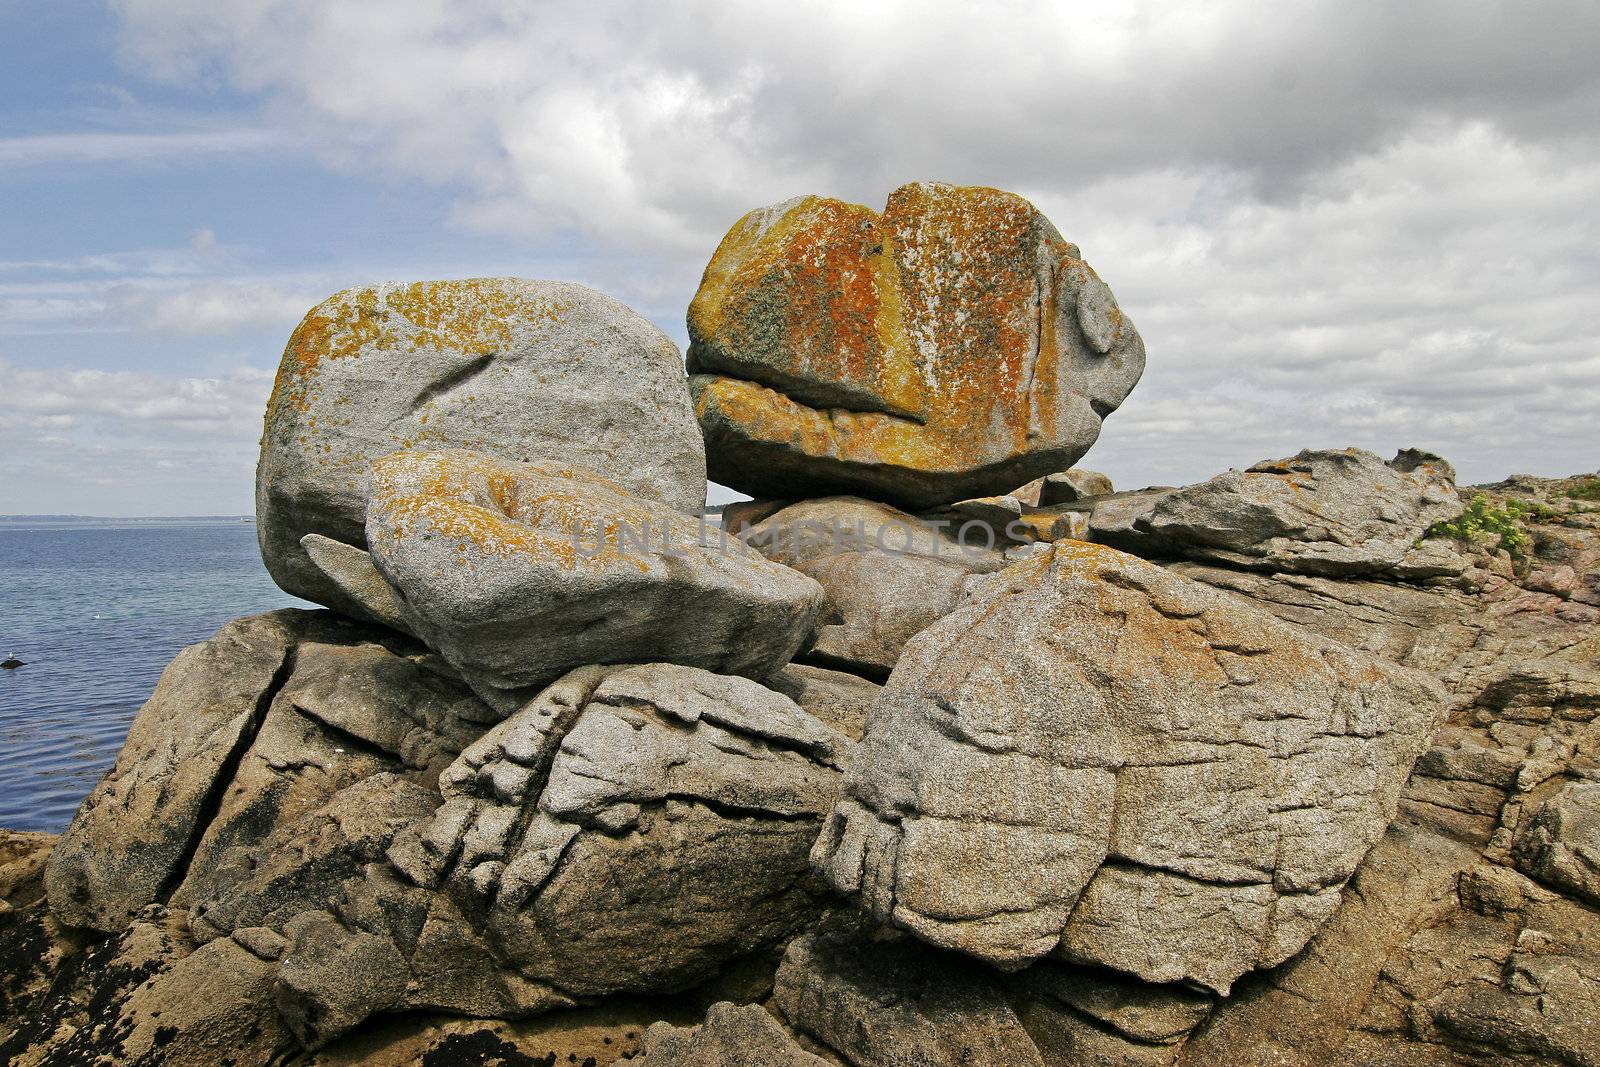 Big Stone on the rock coast near Pointe de Trevignon, Brittany, North France. Stone with orange lichens.